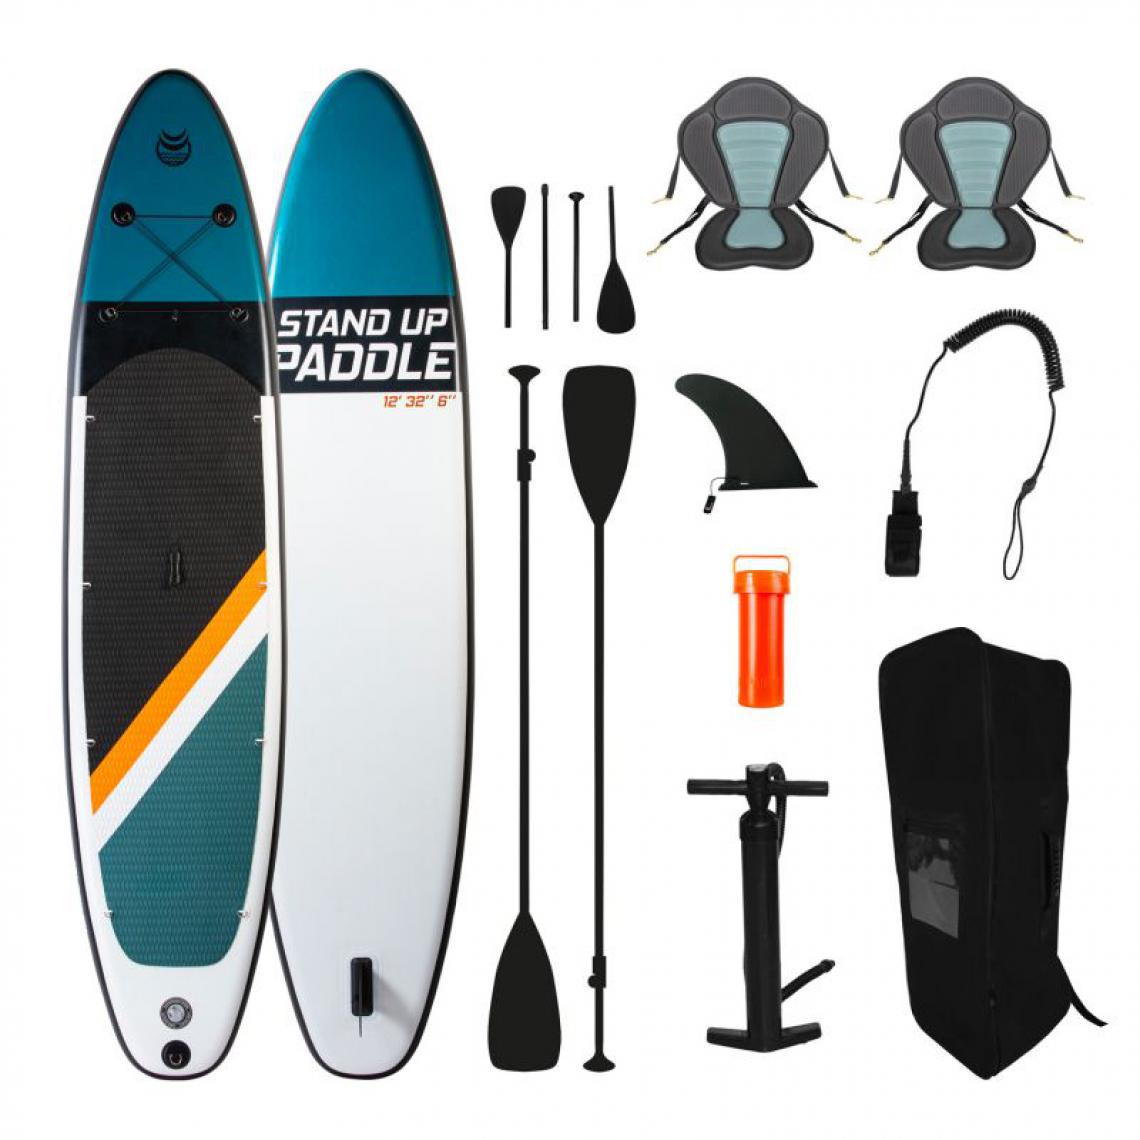 Jt2D - Paddle Gonflable TWO 12' 32'' 6'' (366x81x15cm) avec Pompe, 2 Pagaies, 2 sièges de kayak, Leash et Sac de Transport - Jeux de plage